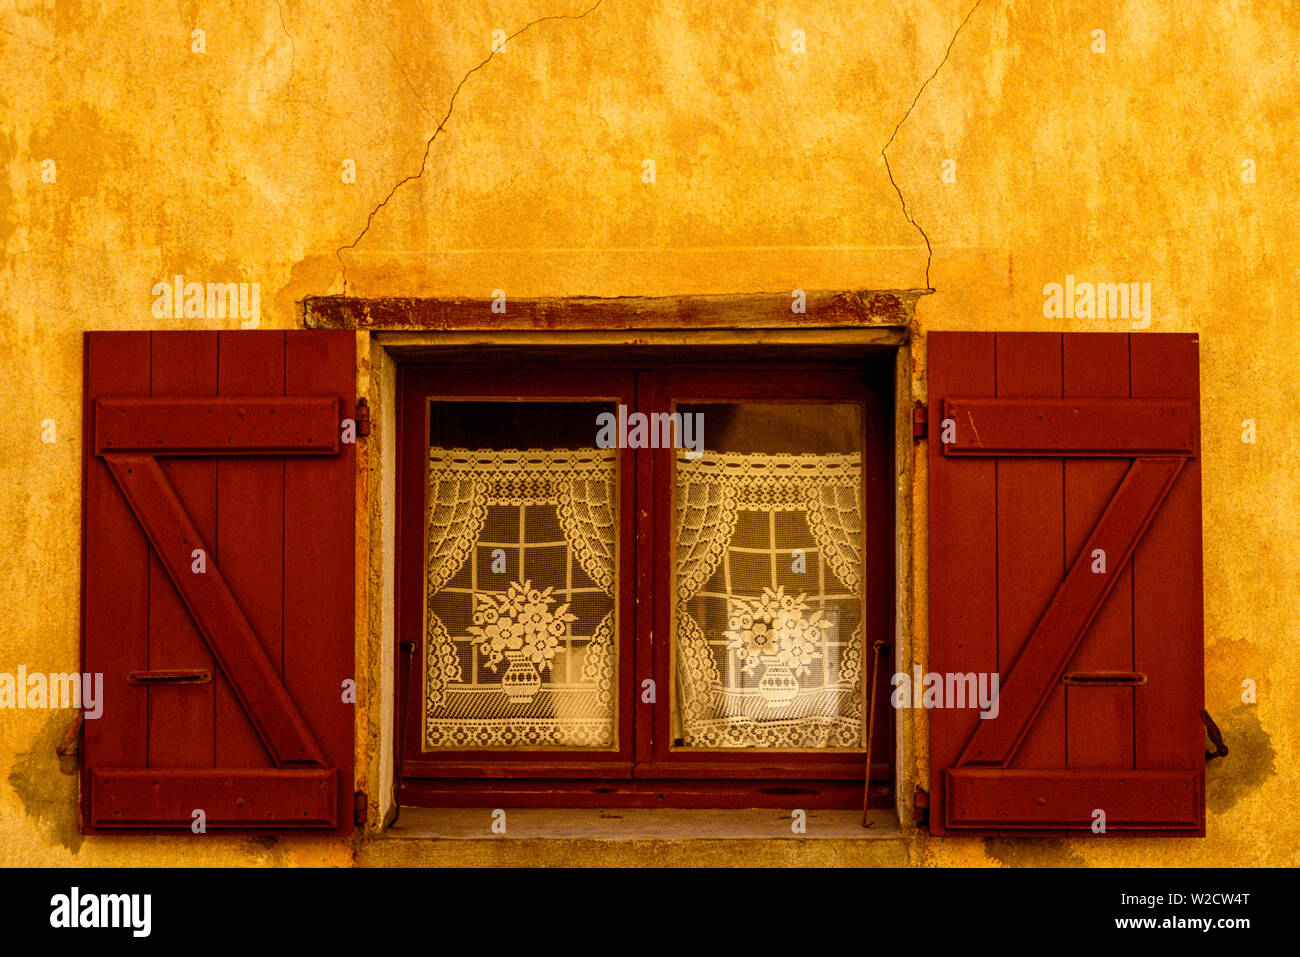 Korsika, Frankreich. August 1990. Ein Fenster in eine gelbe Wand mit Gardinen. Foto: © Simon Grosset. Archiv: Bild von einem ursprünglichen Transparenz digitalisiert. Stockfoto